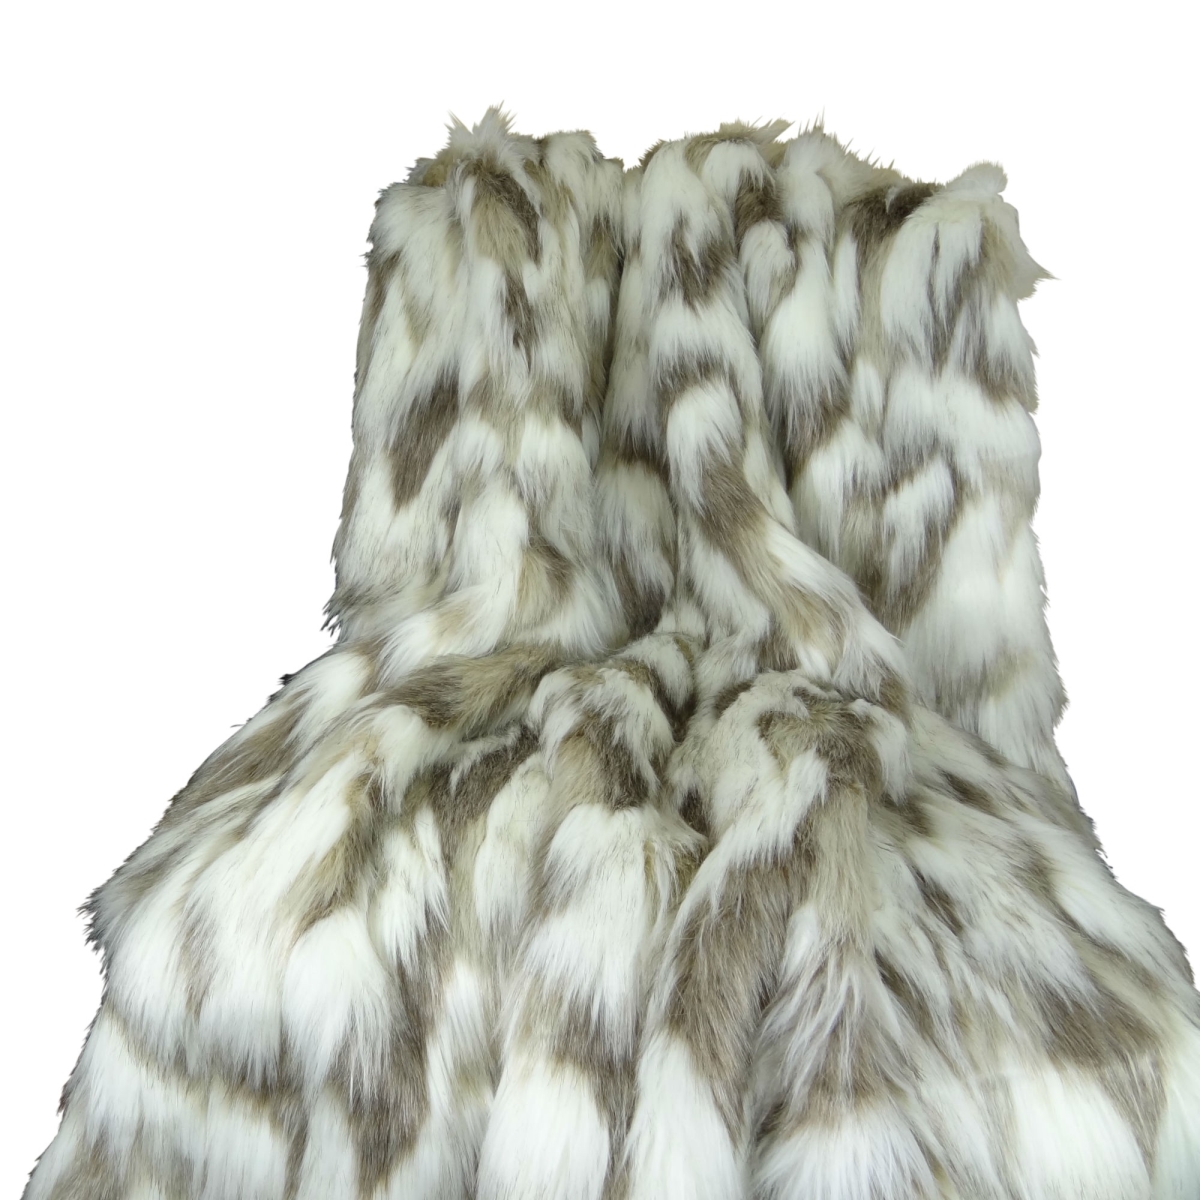 Pb16405-96x110t Tibet Faux Fur Blanket, Ivory & Gray - 96 X 110 In.